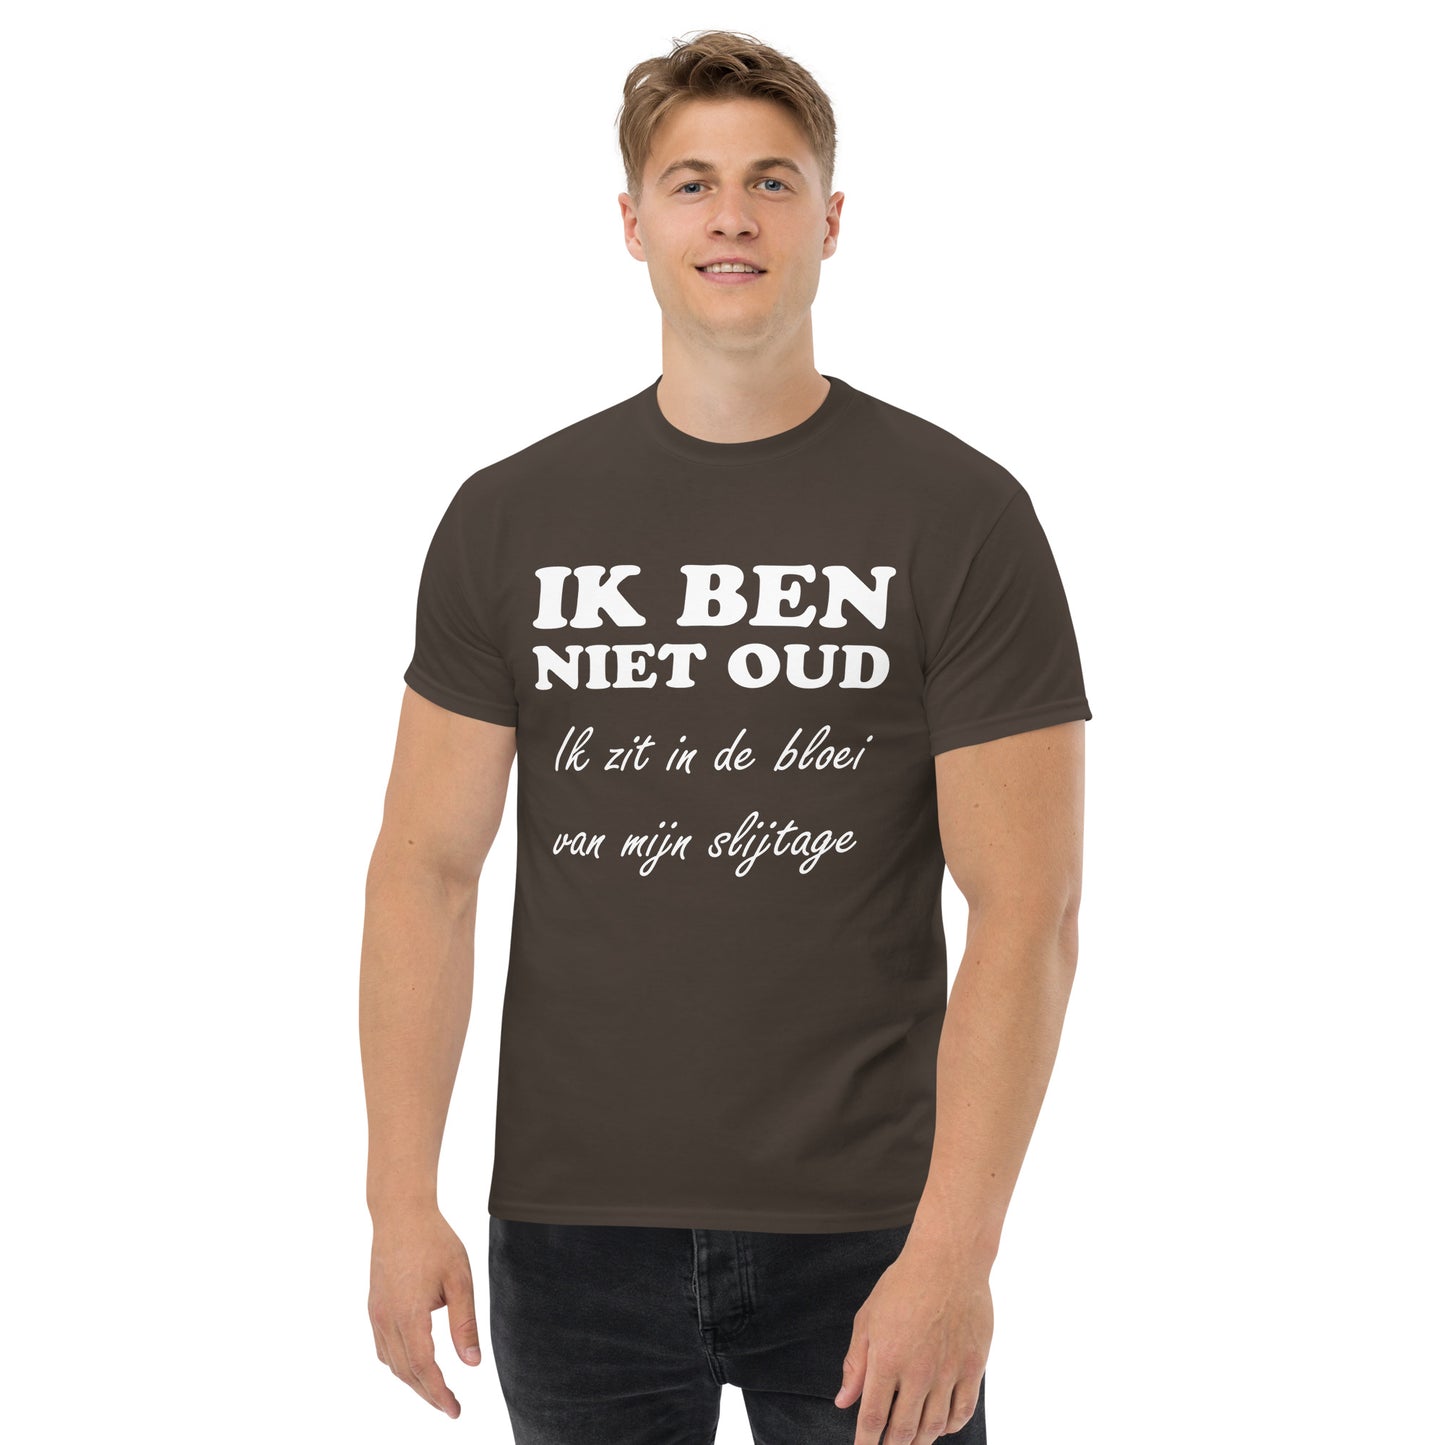 Chocolate T-shirt with the text "IK BEN NIET OUD ik zit in de bloei van mijn slijtage"